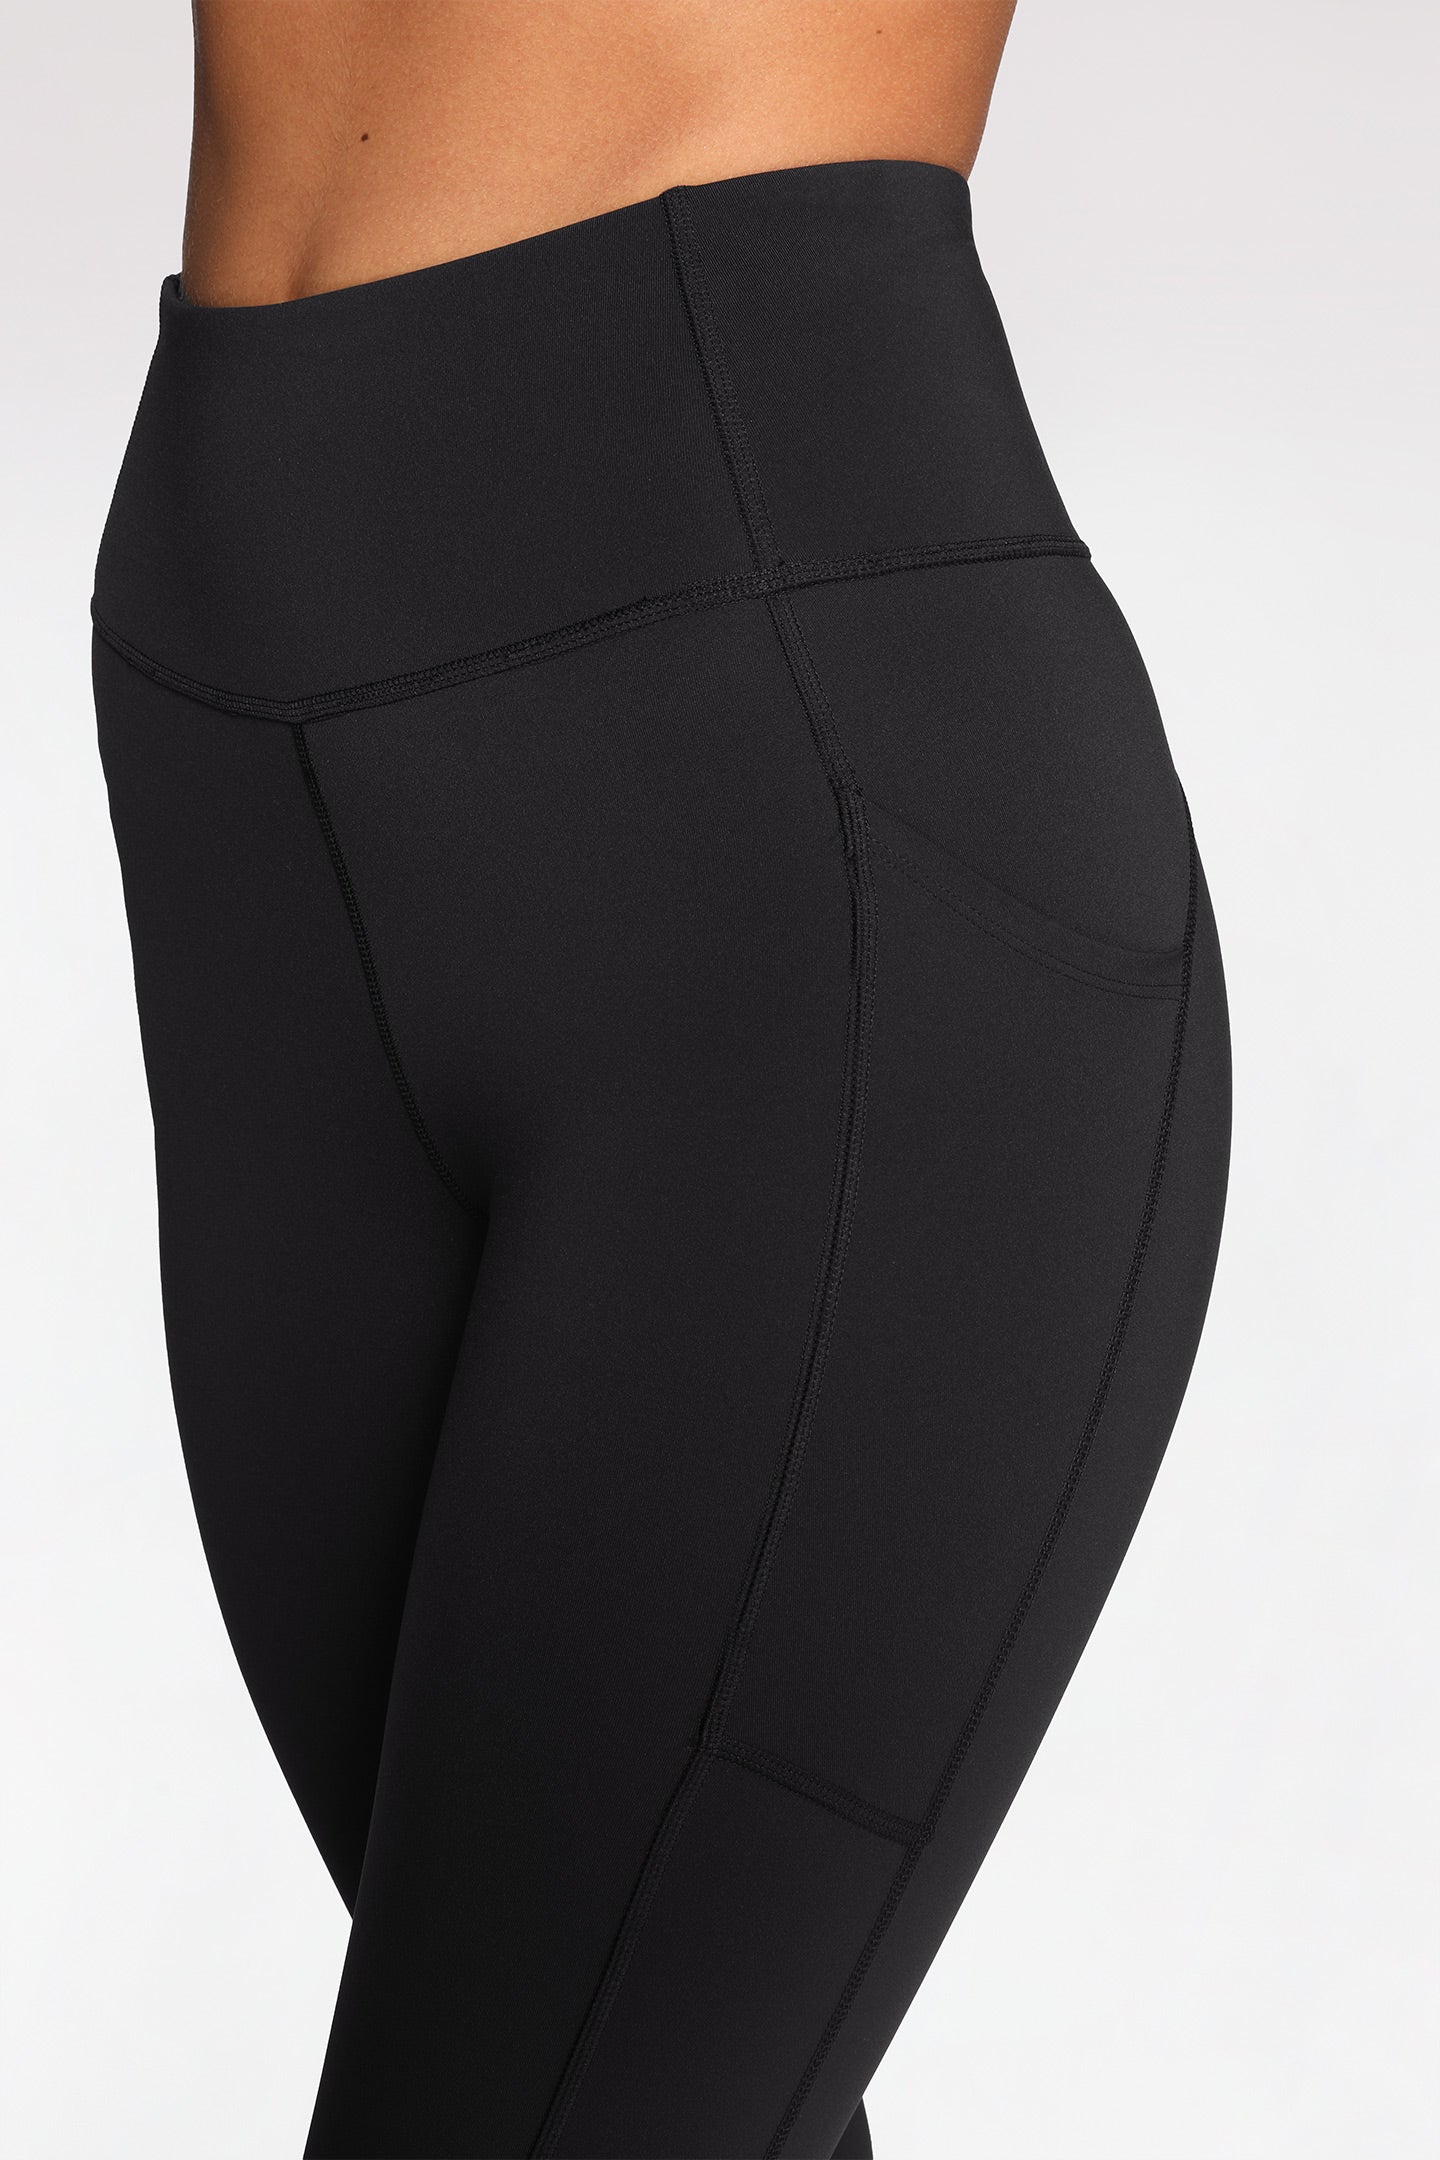 Alphalete, Pants & Jumpsuits, Alphalete Black High Rise Compression  Leggings Size Xs Pockets Activewear Pants